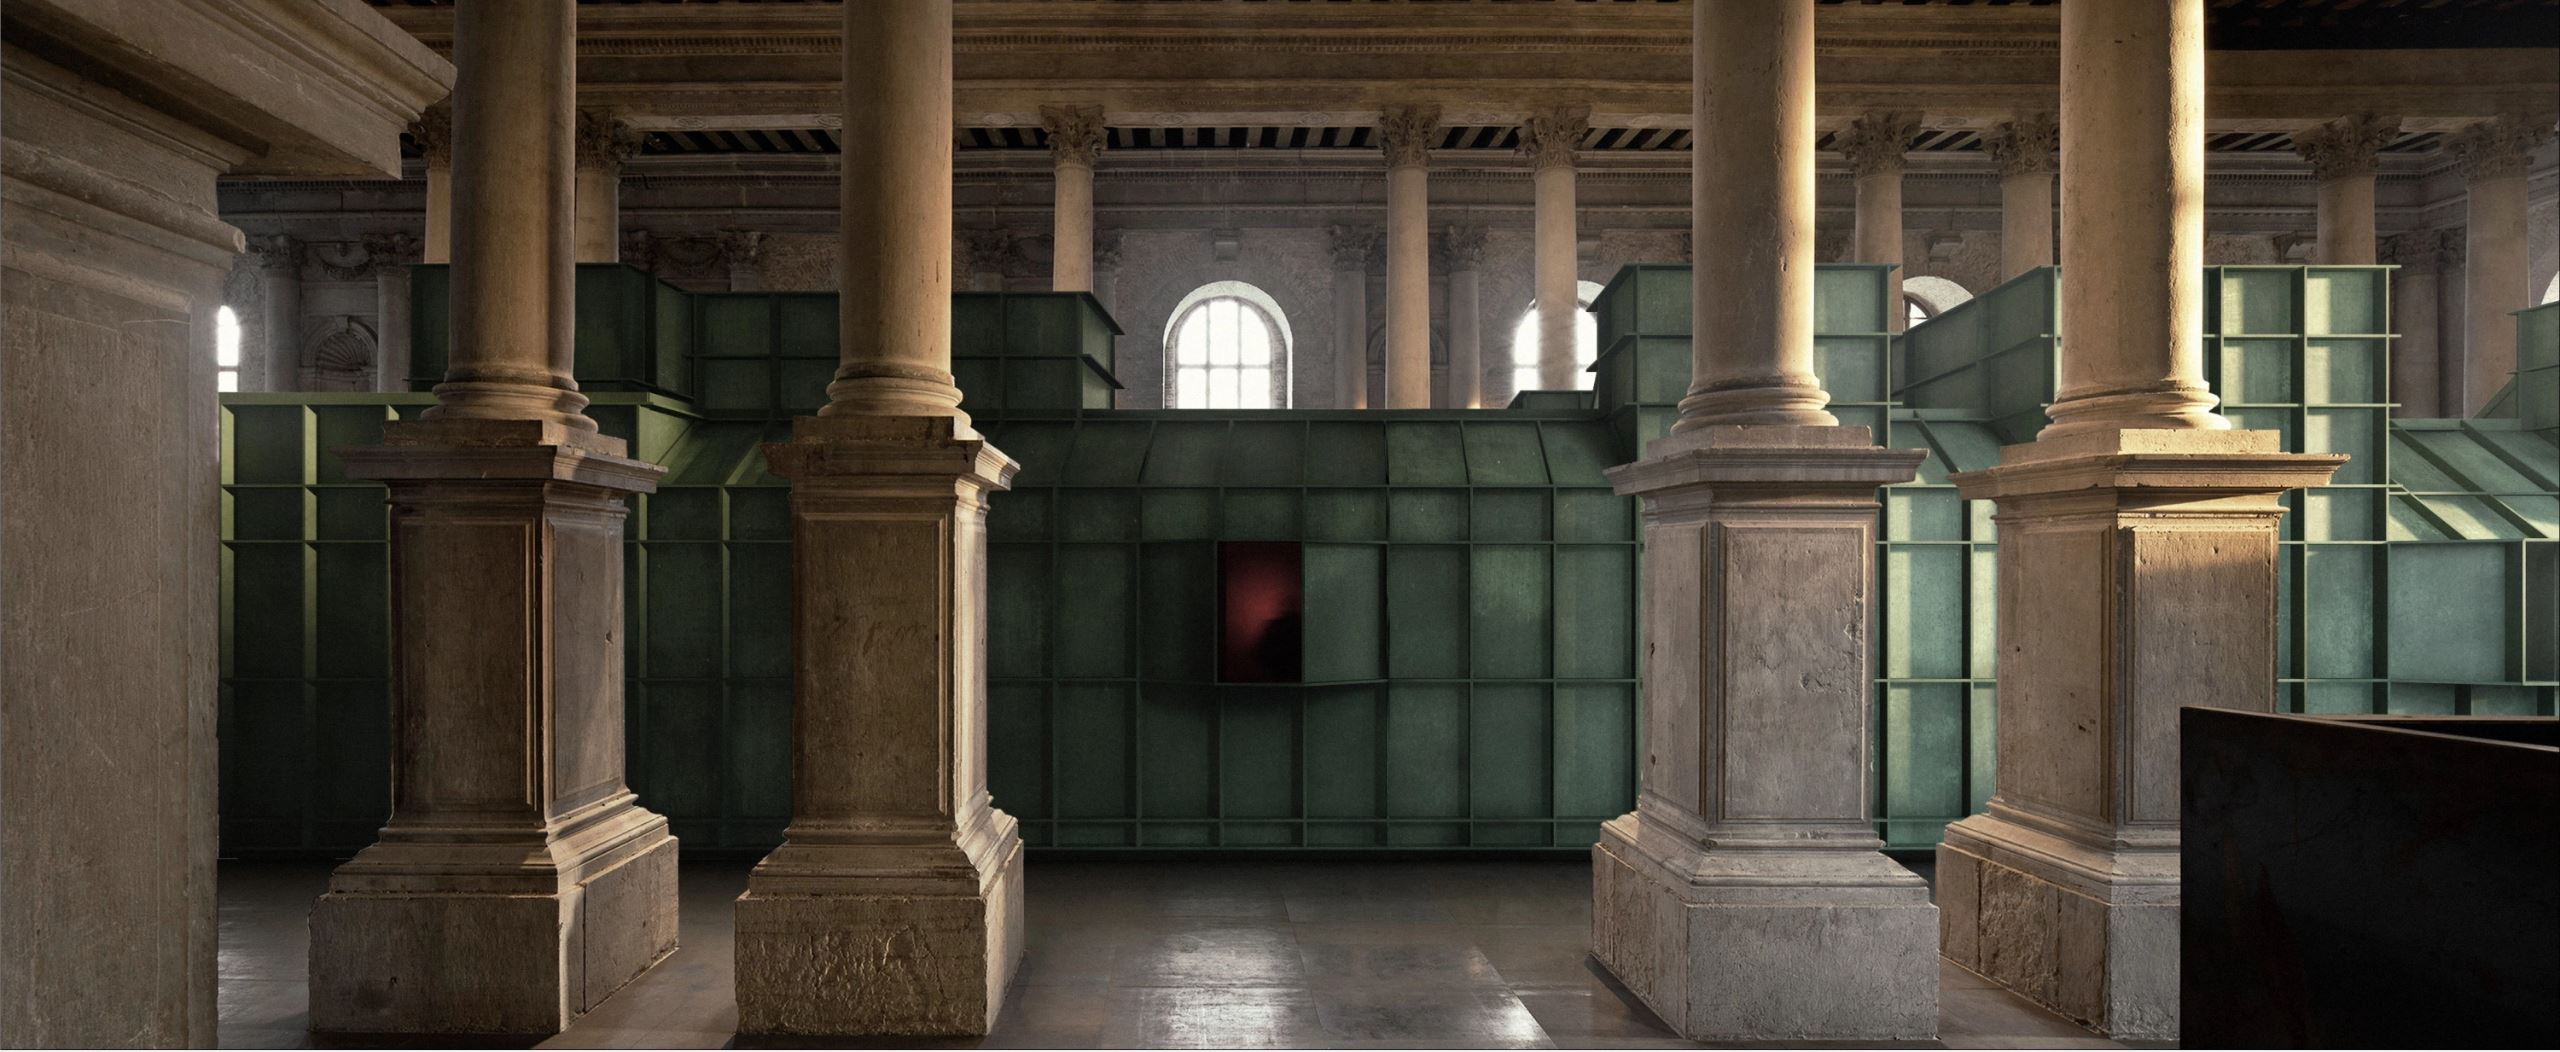 王子耕が共同キュレーターおよび空間デザイナーを担当した作品「鋳憶」は2019年第十三回全国美術作品展に入選